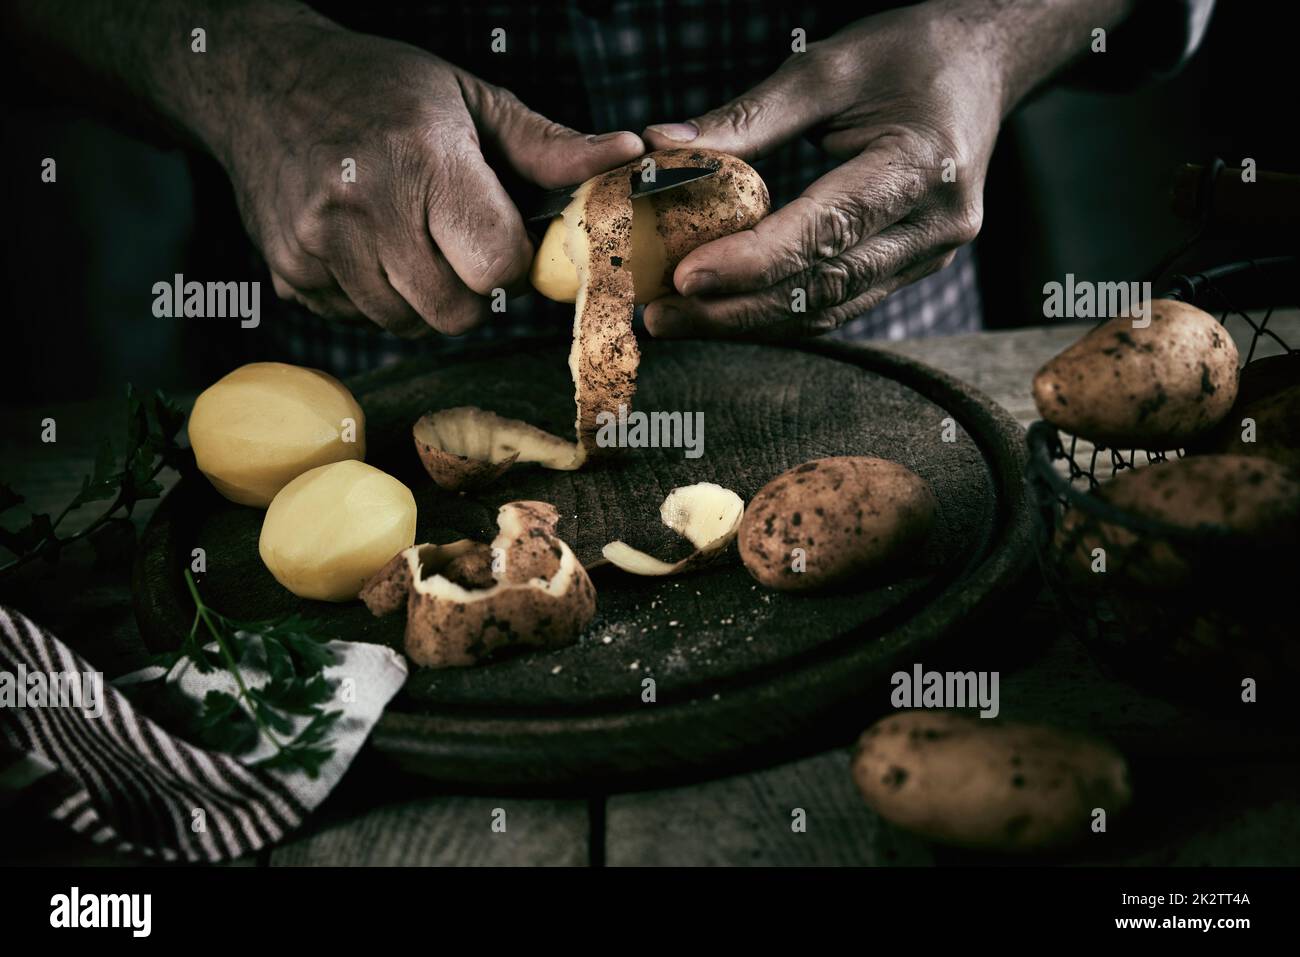 Crop maschio senza volto che sbuccia le patate in cucina Foto Stock